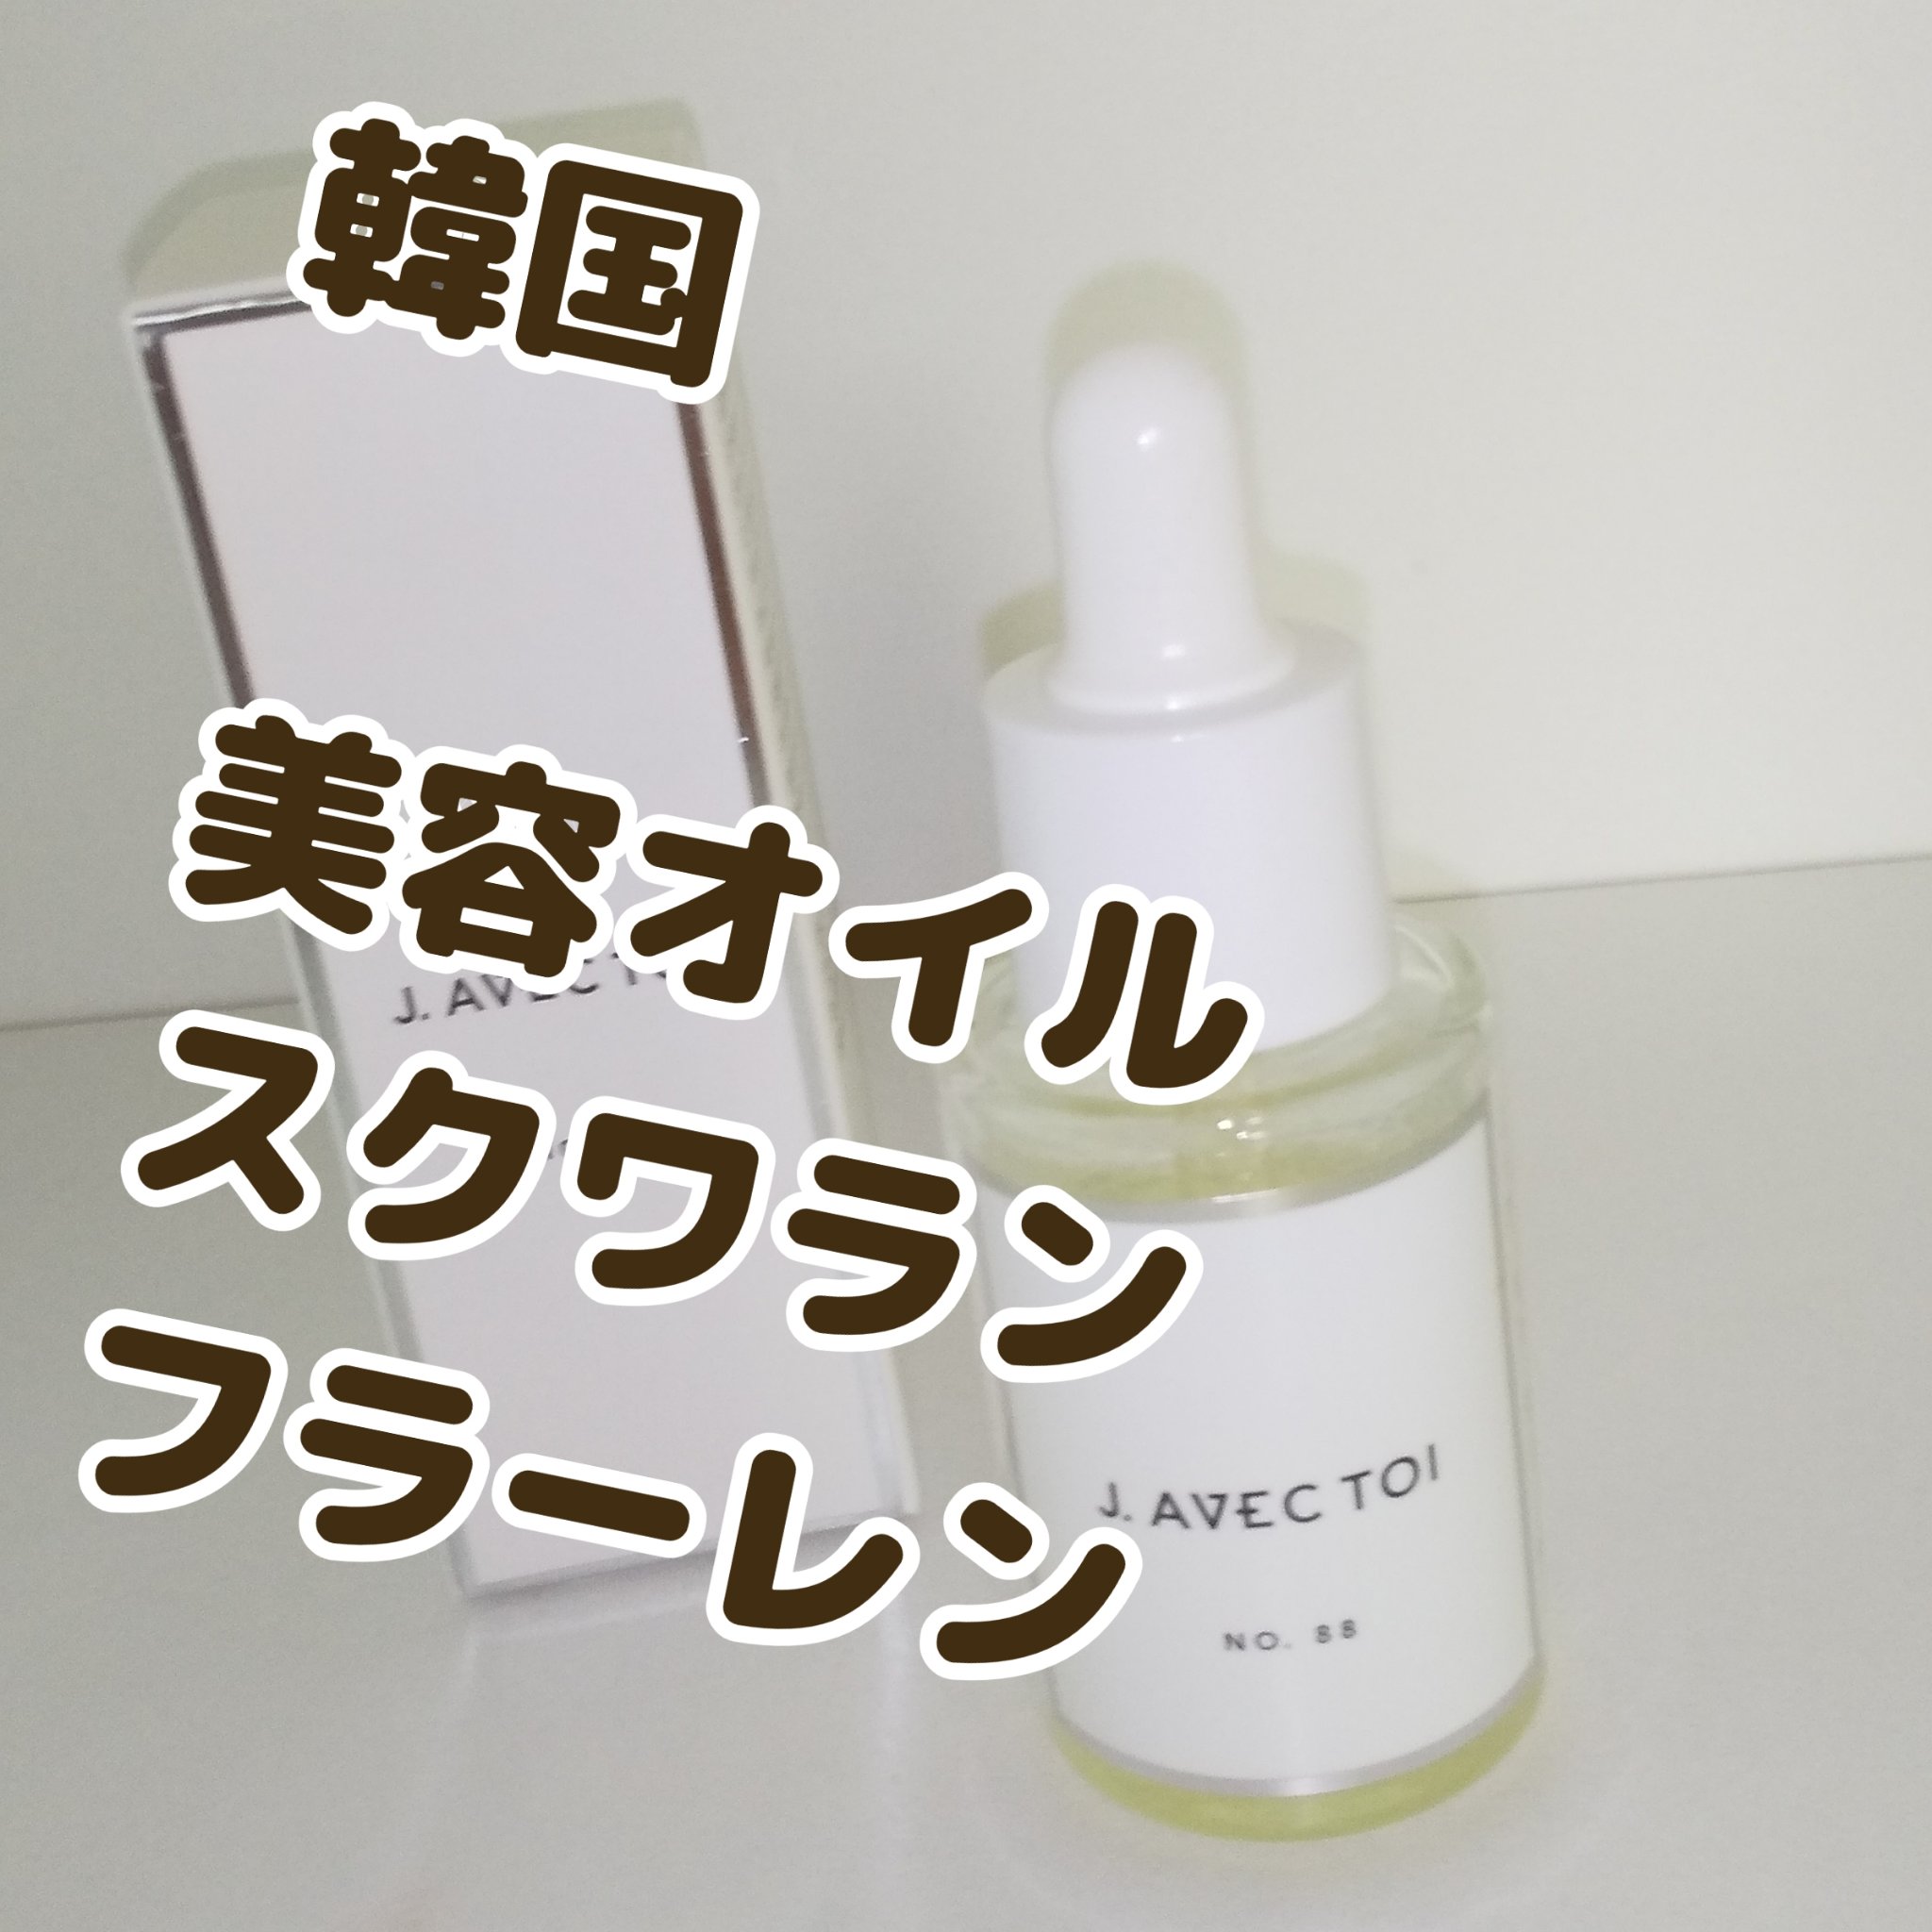 【新品未開封】J.AVEC TOI 化粧オイル(フェイスマスク付)